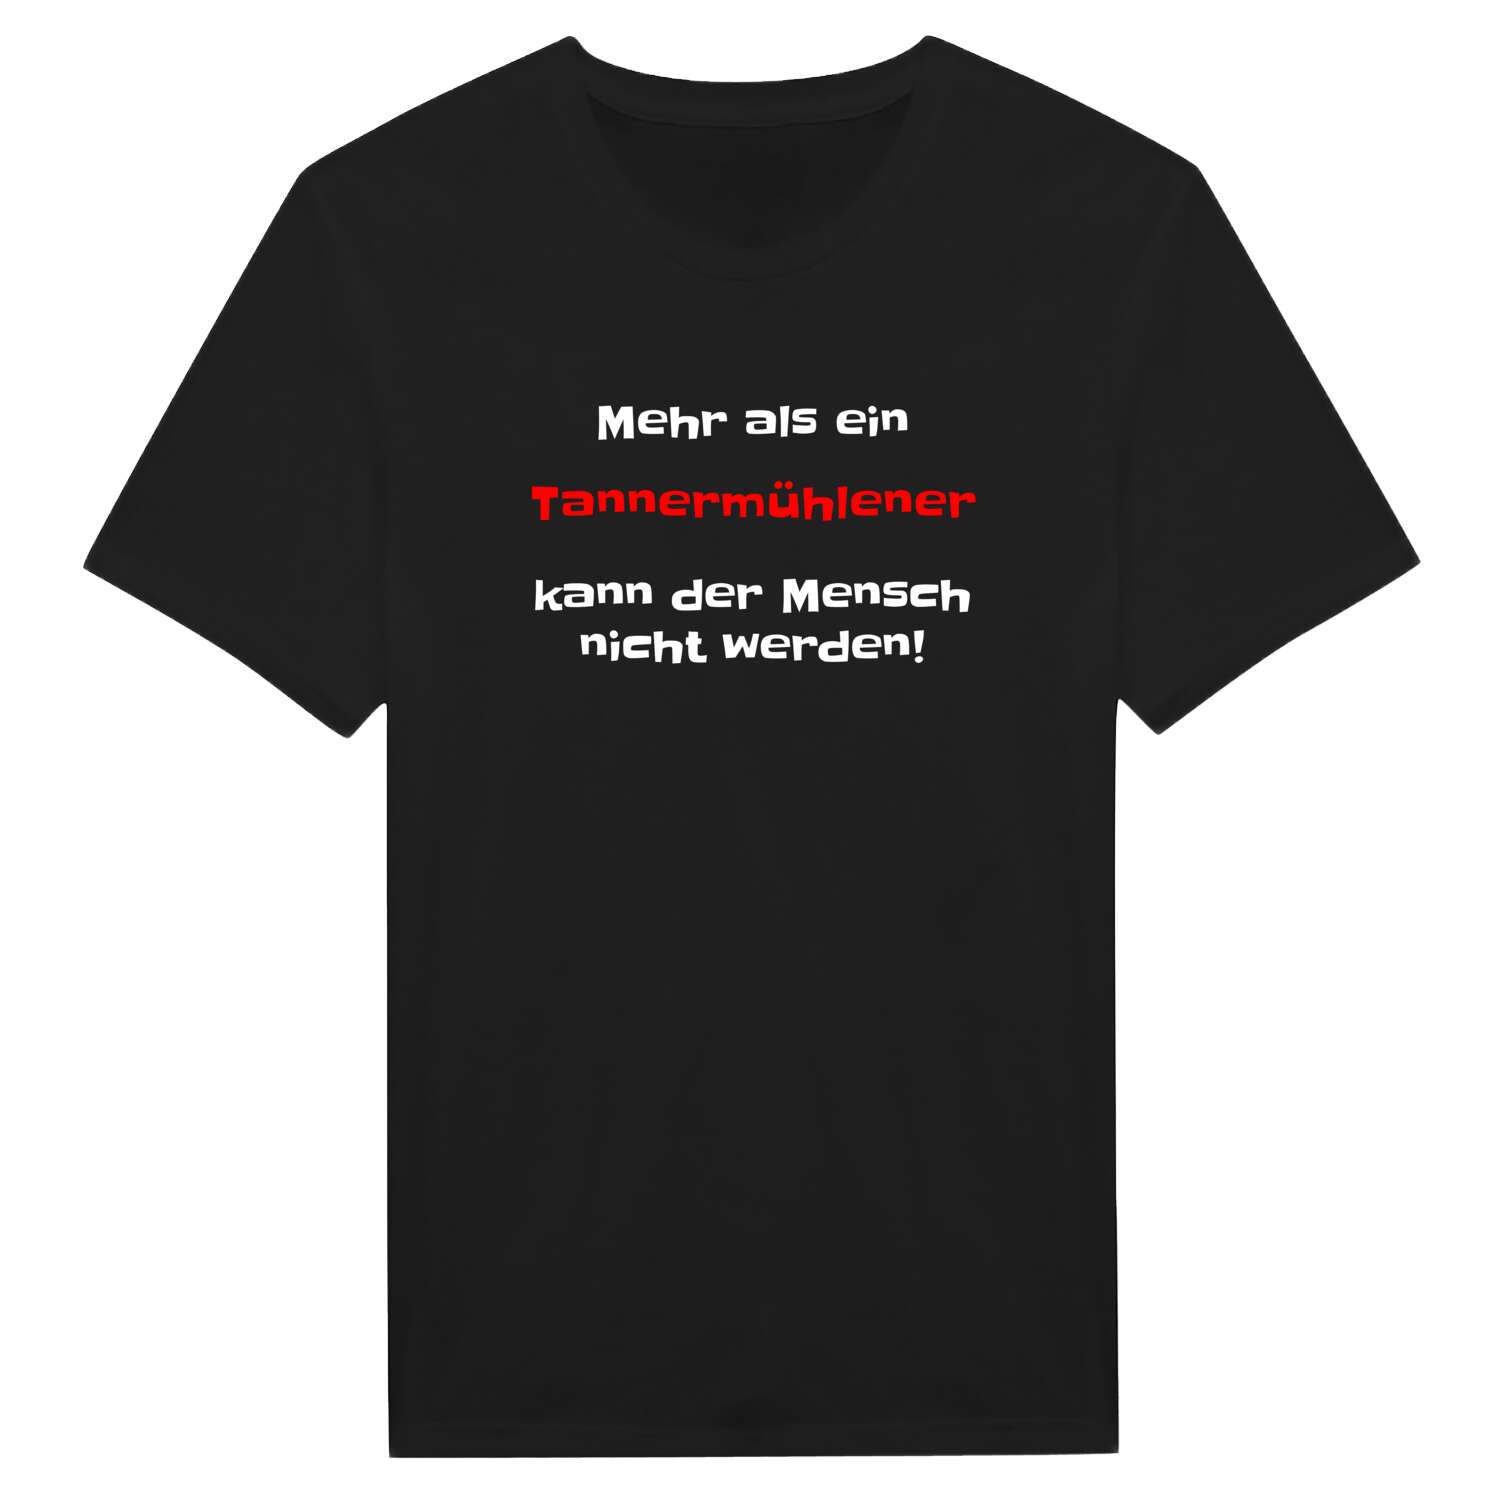 Tannermühle T-Shirt »Mehr als ein«